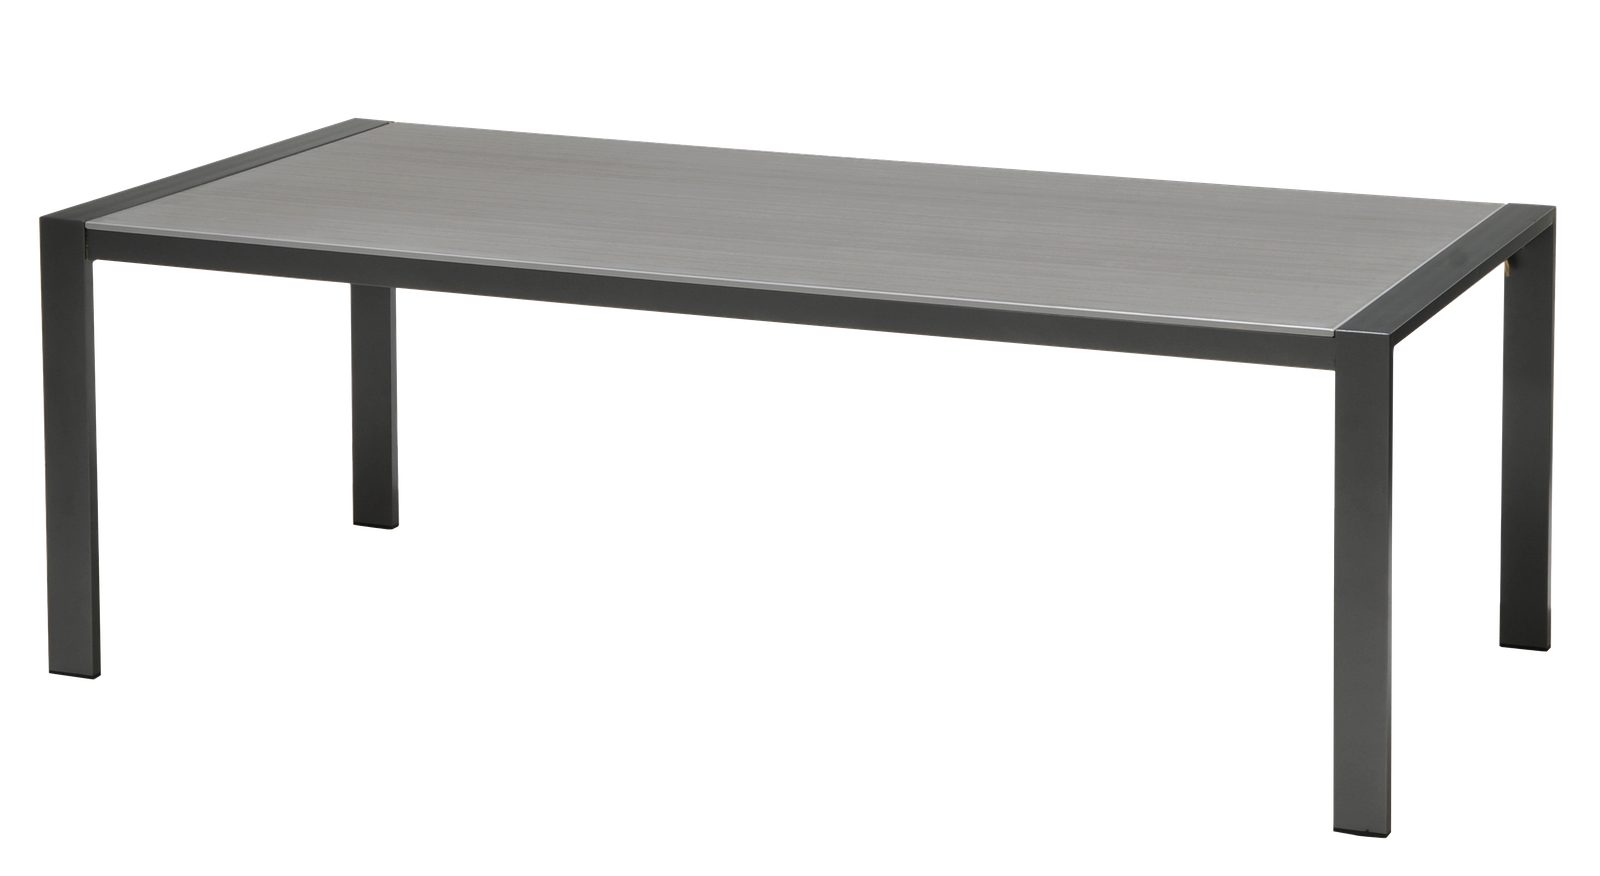 Lesli Living Gartentisch Gartentisch Tisch Esstisch DURANITE 218x100x75 cm anthrazit Aluminium